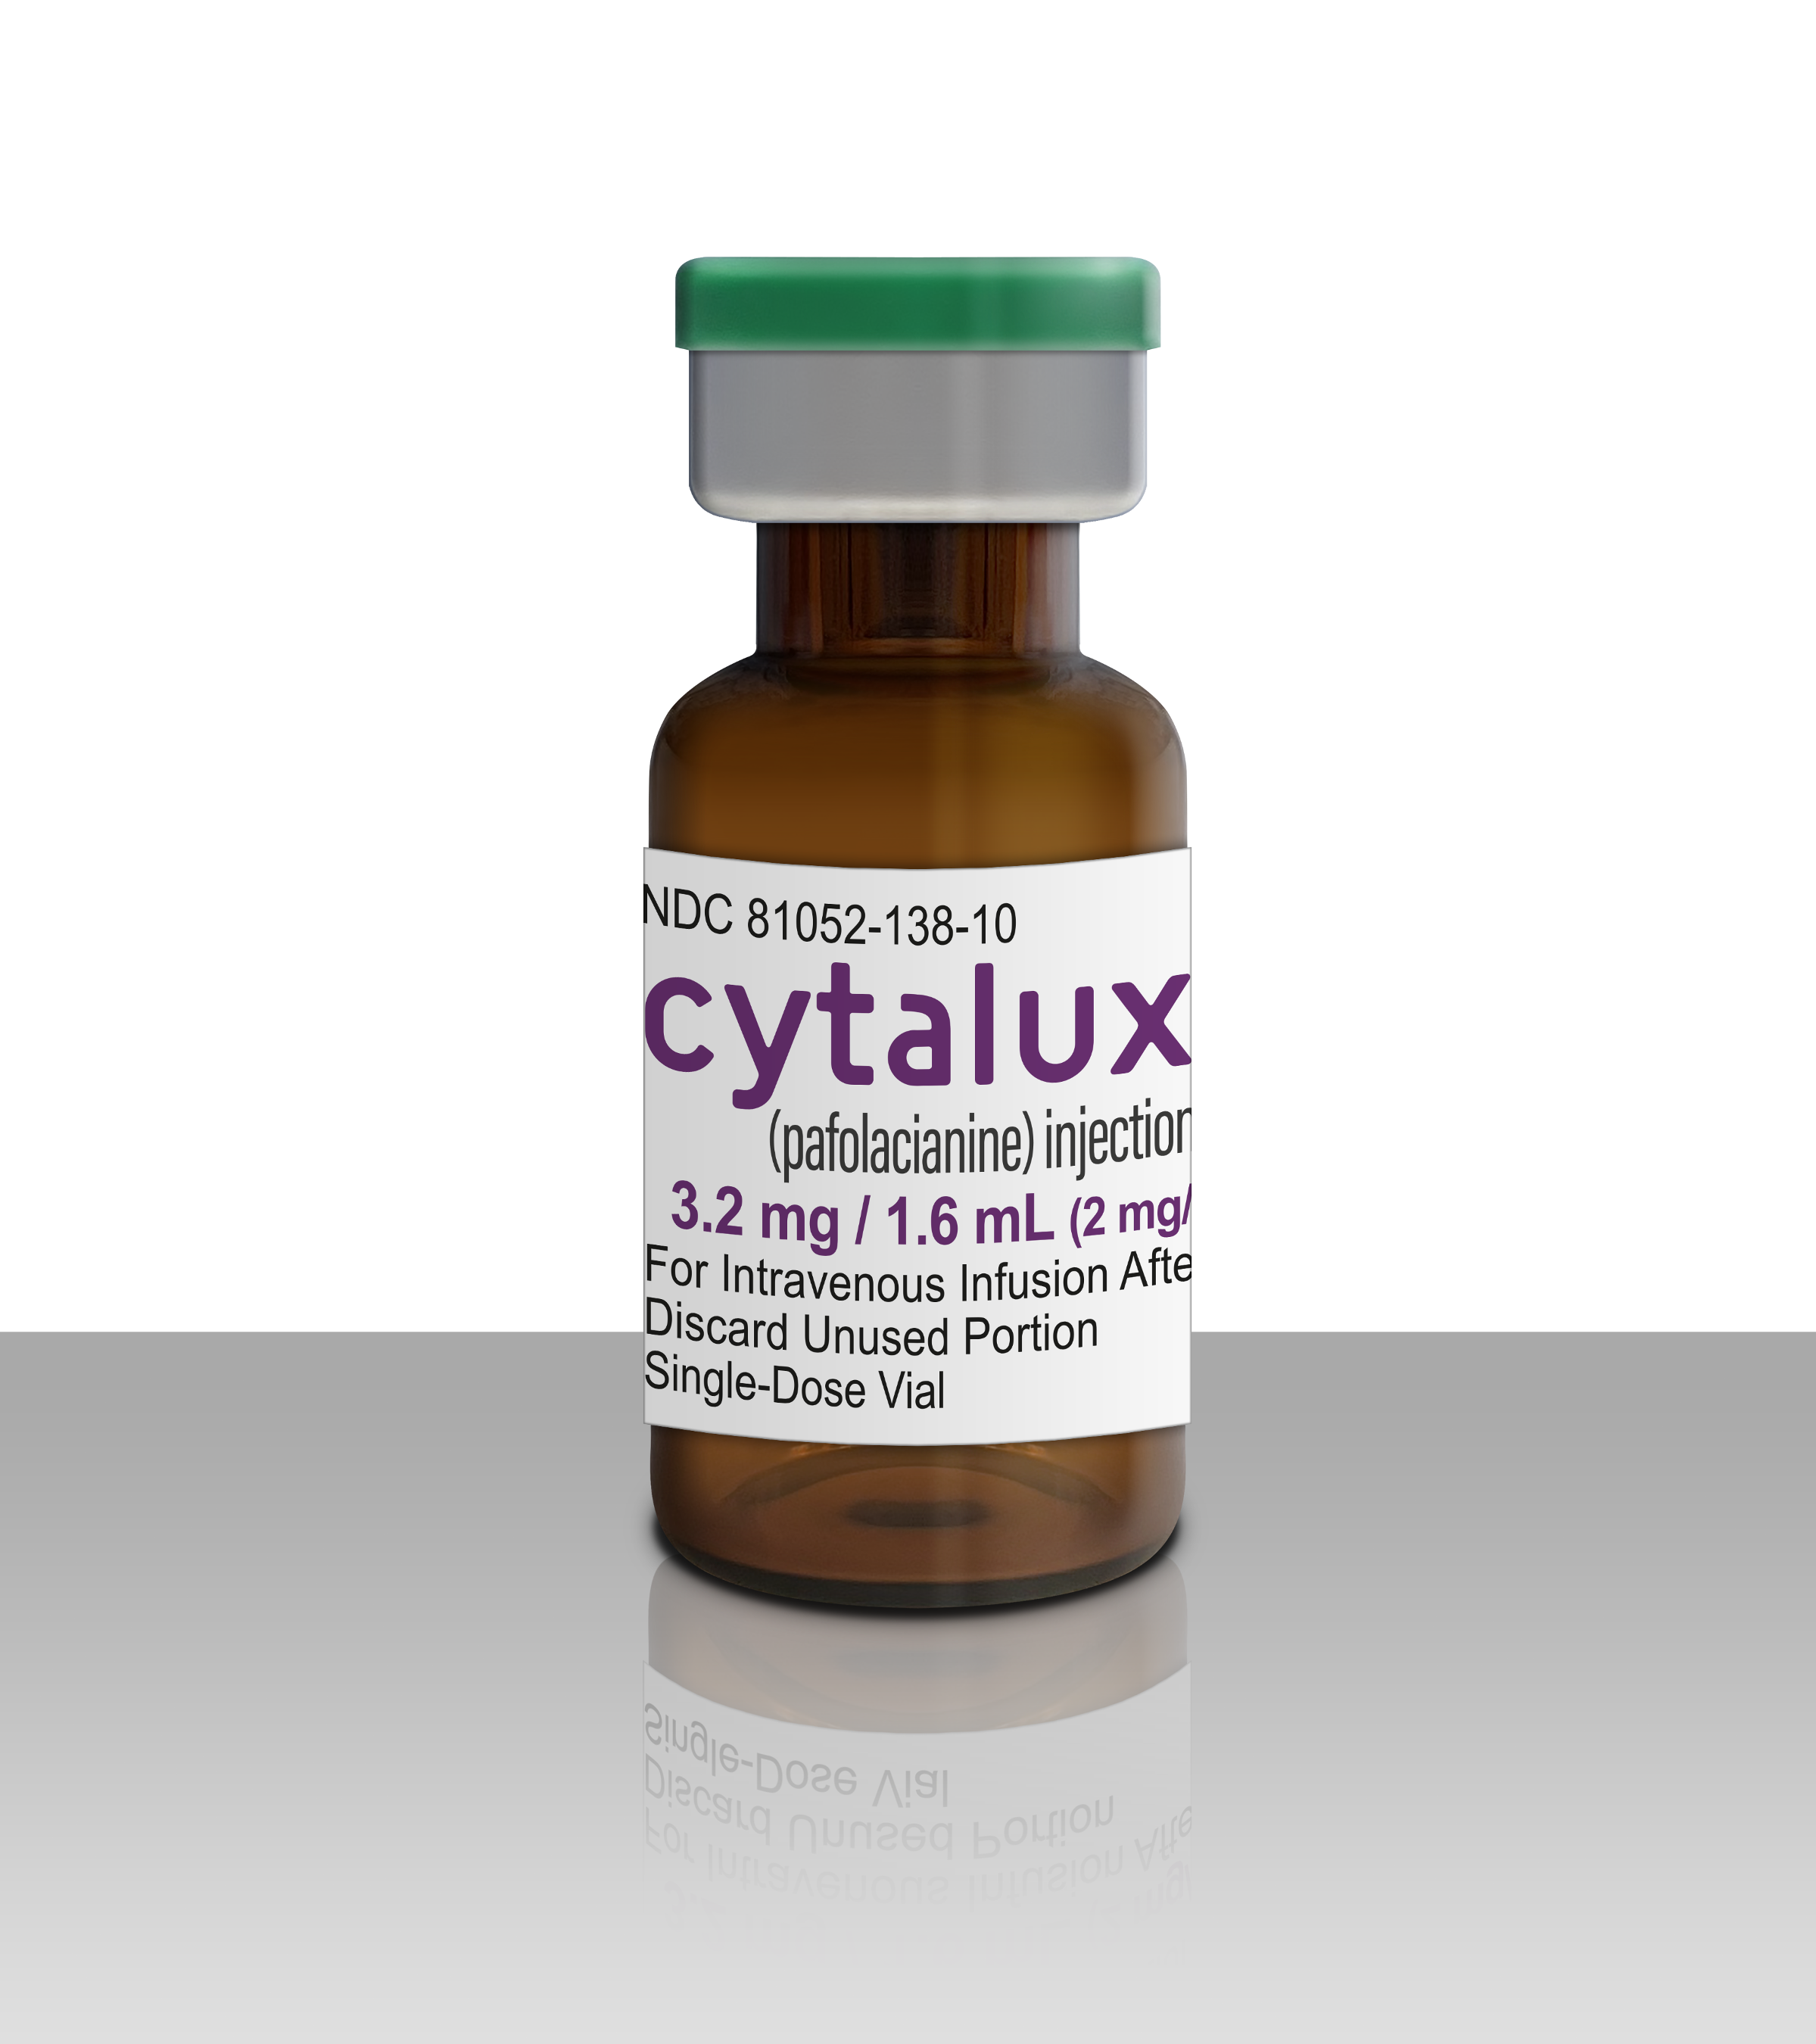 CYTALUX vial